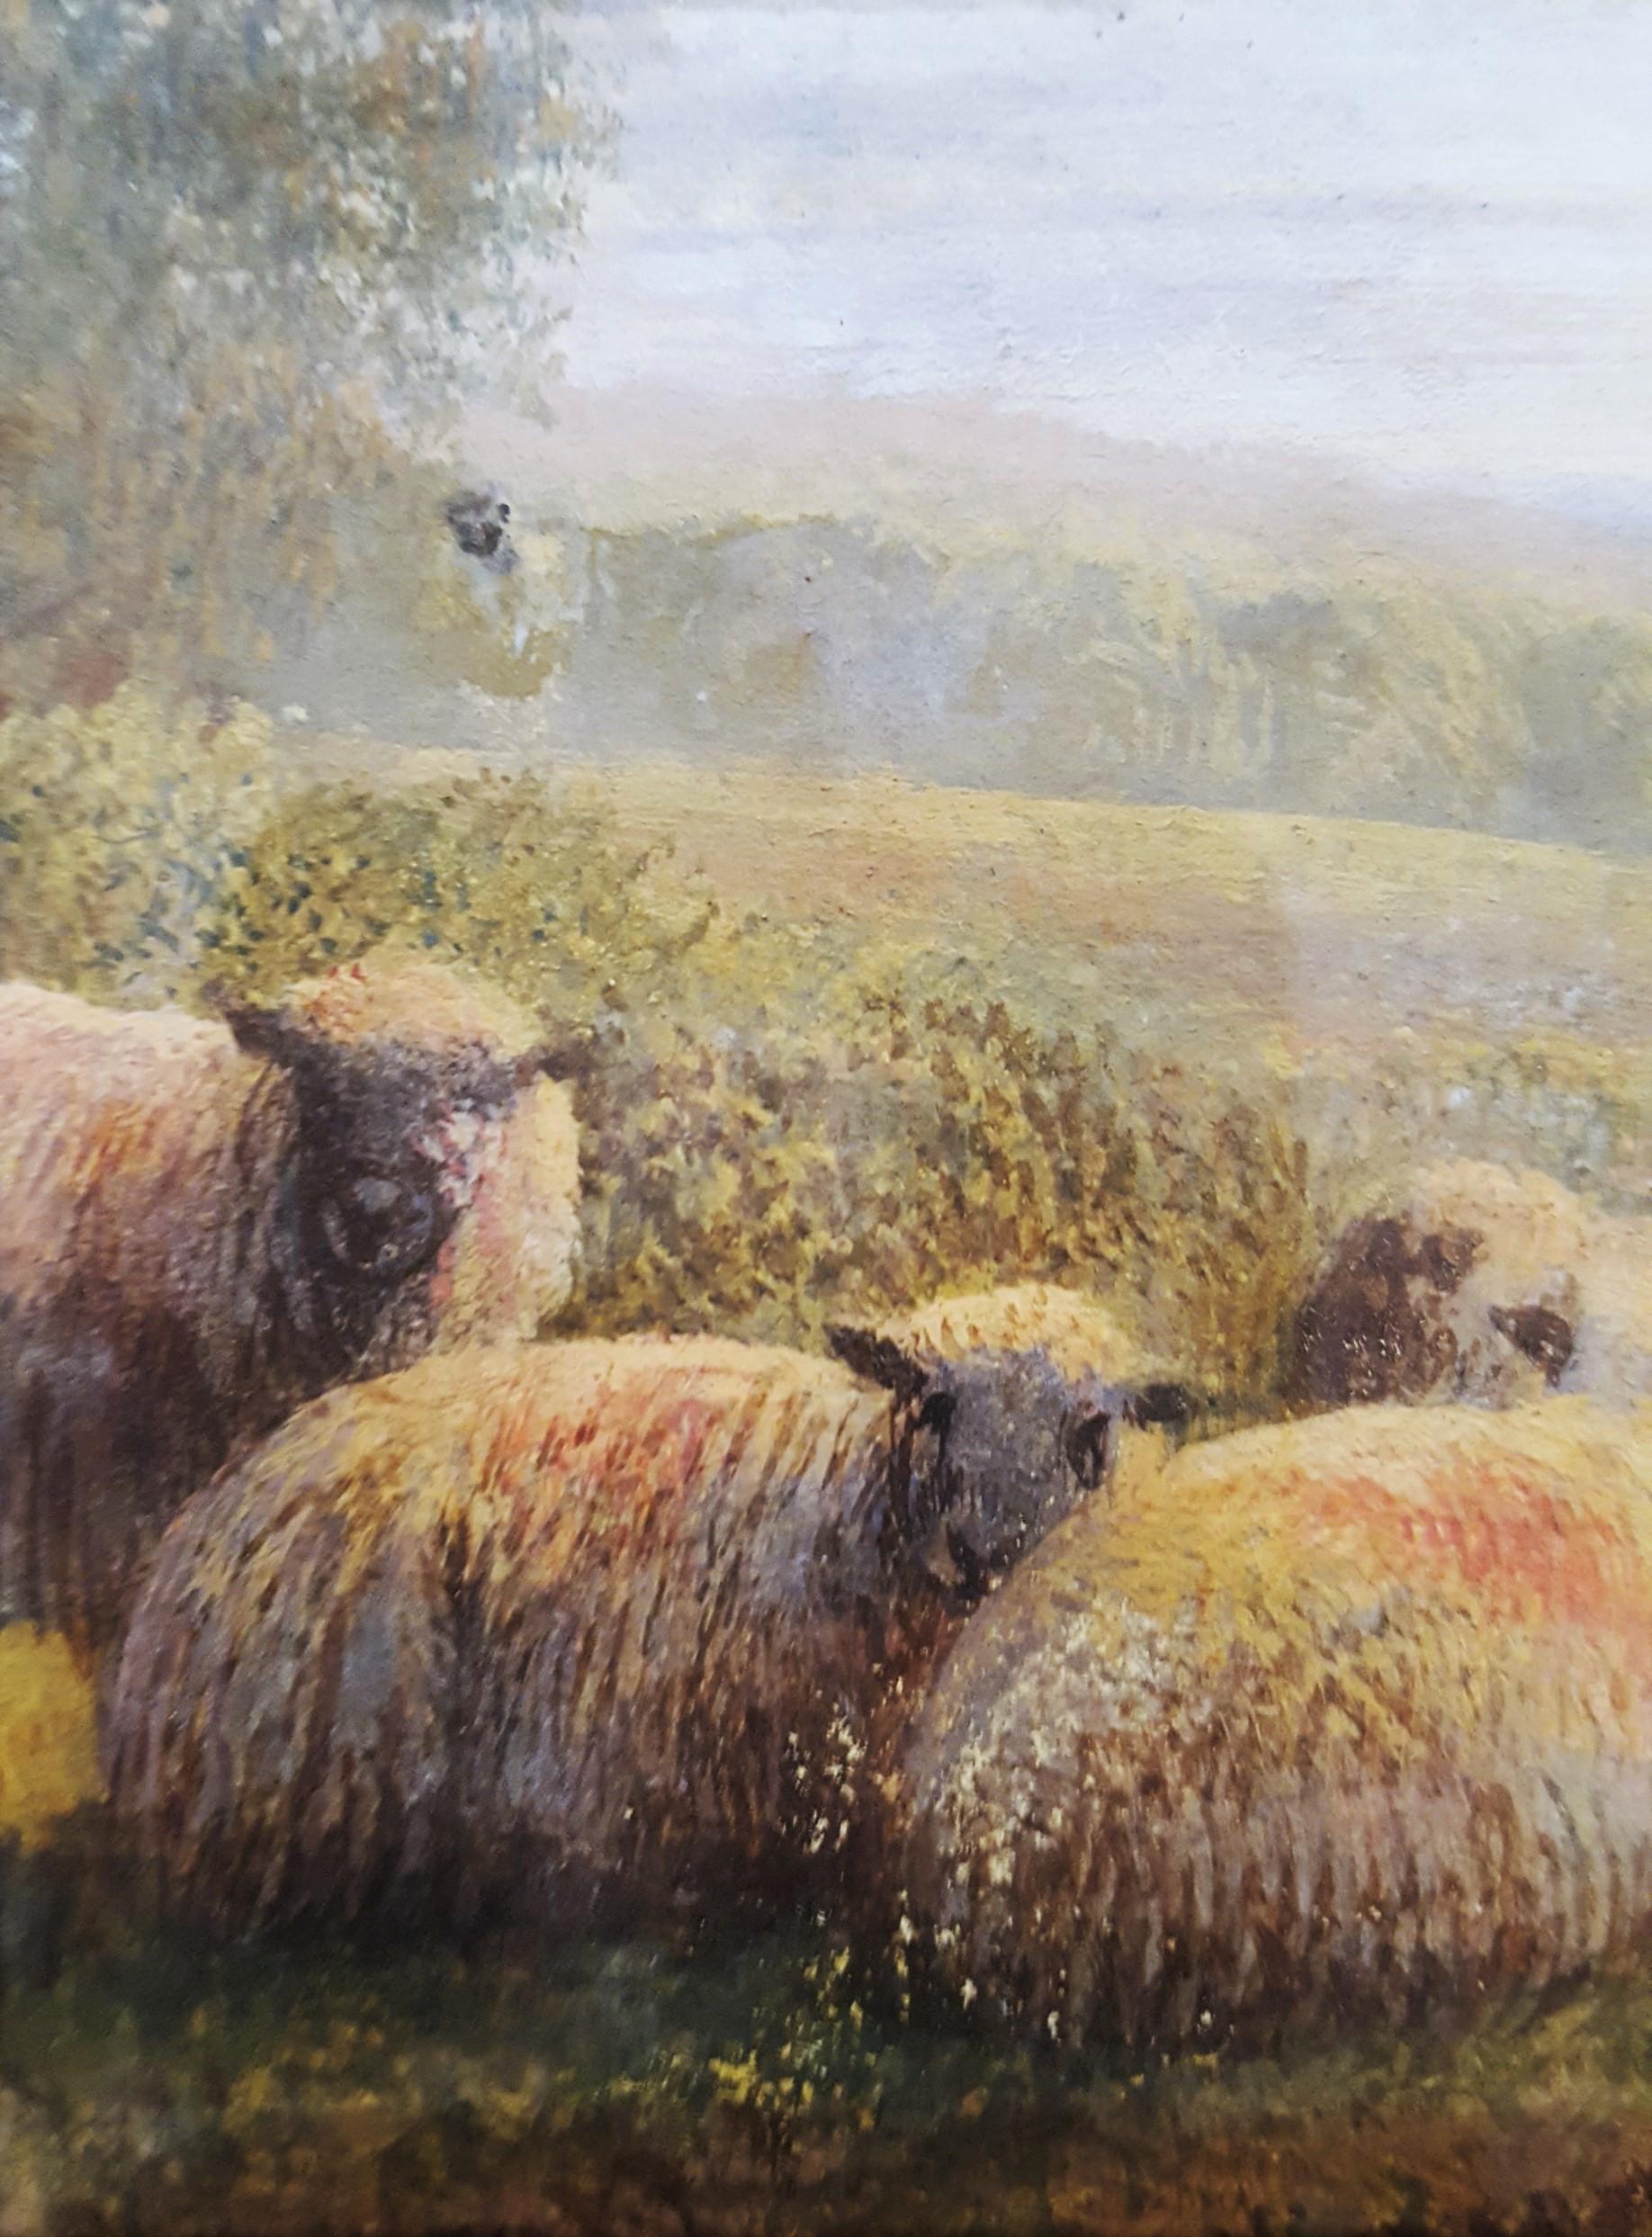 Sheep in Landscape at Dusk 4